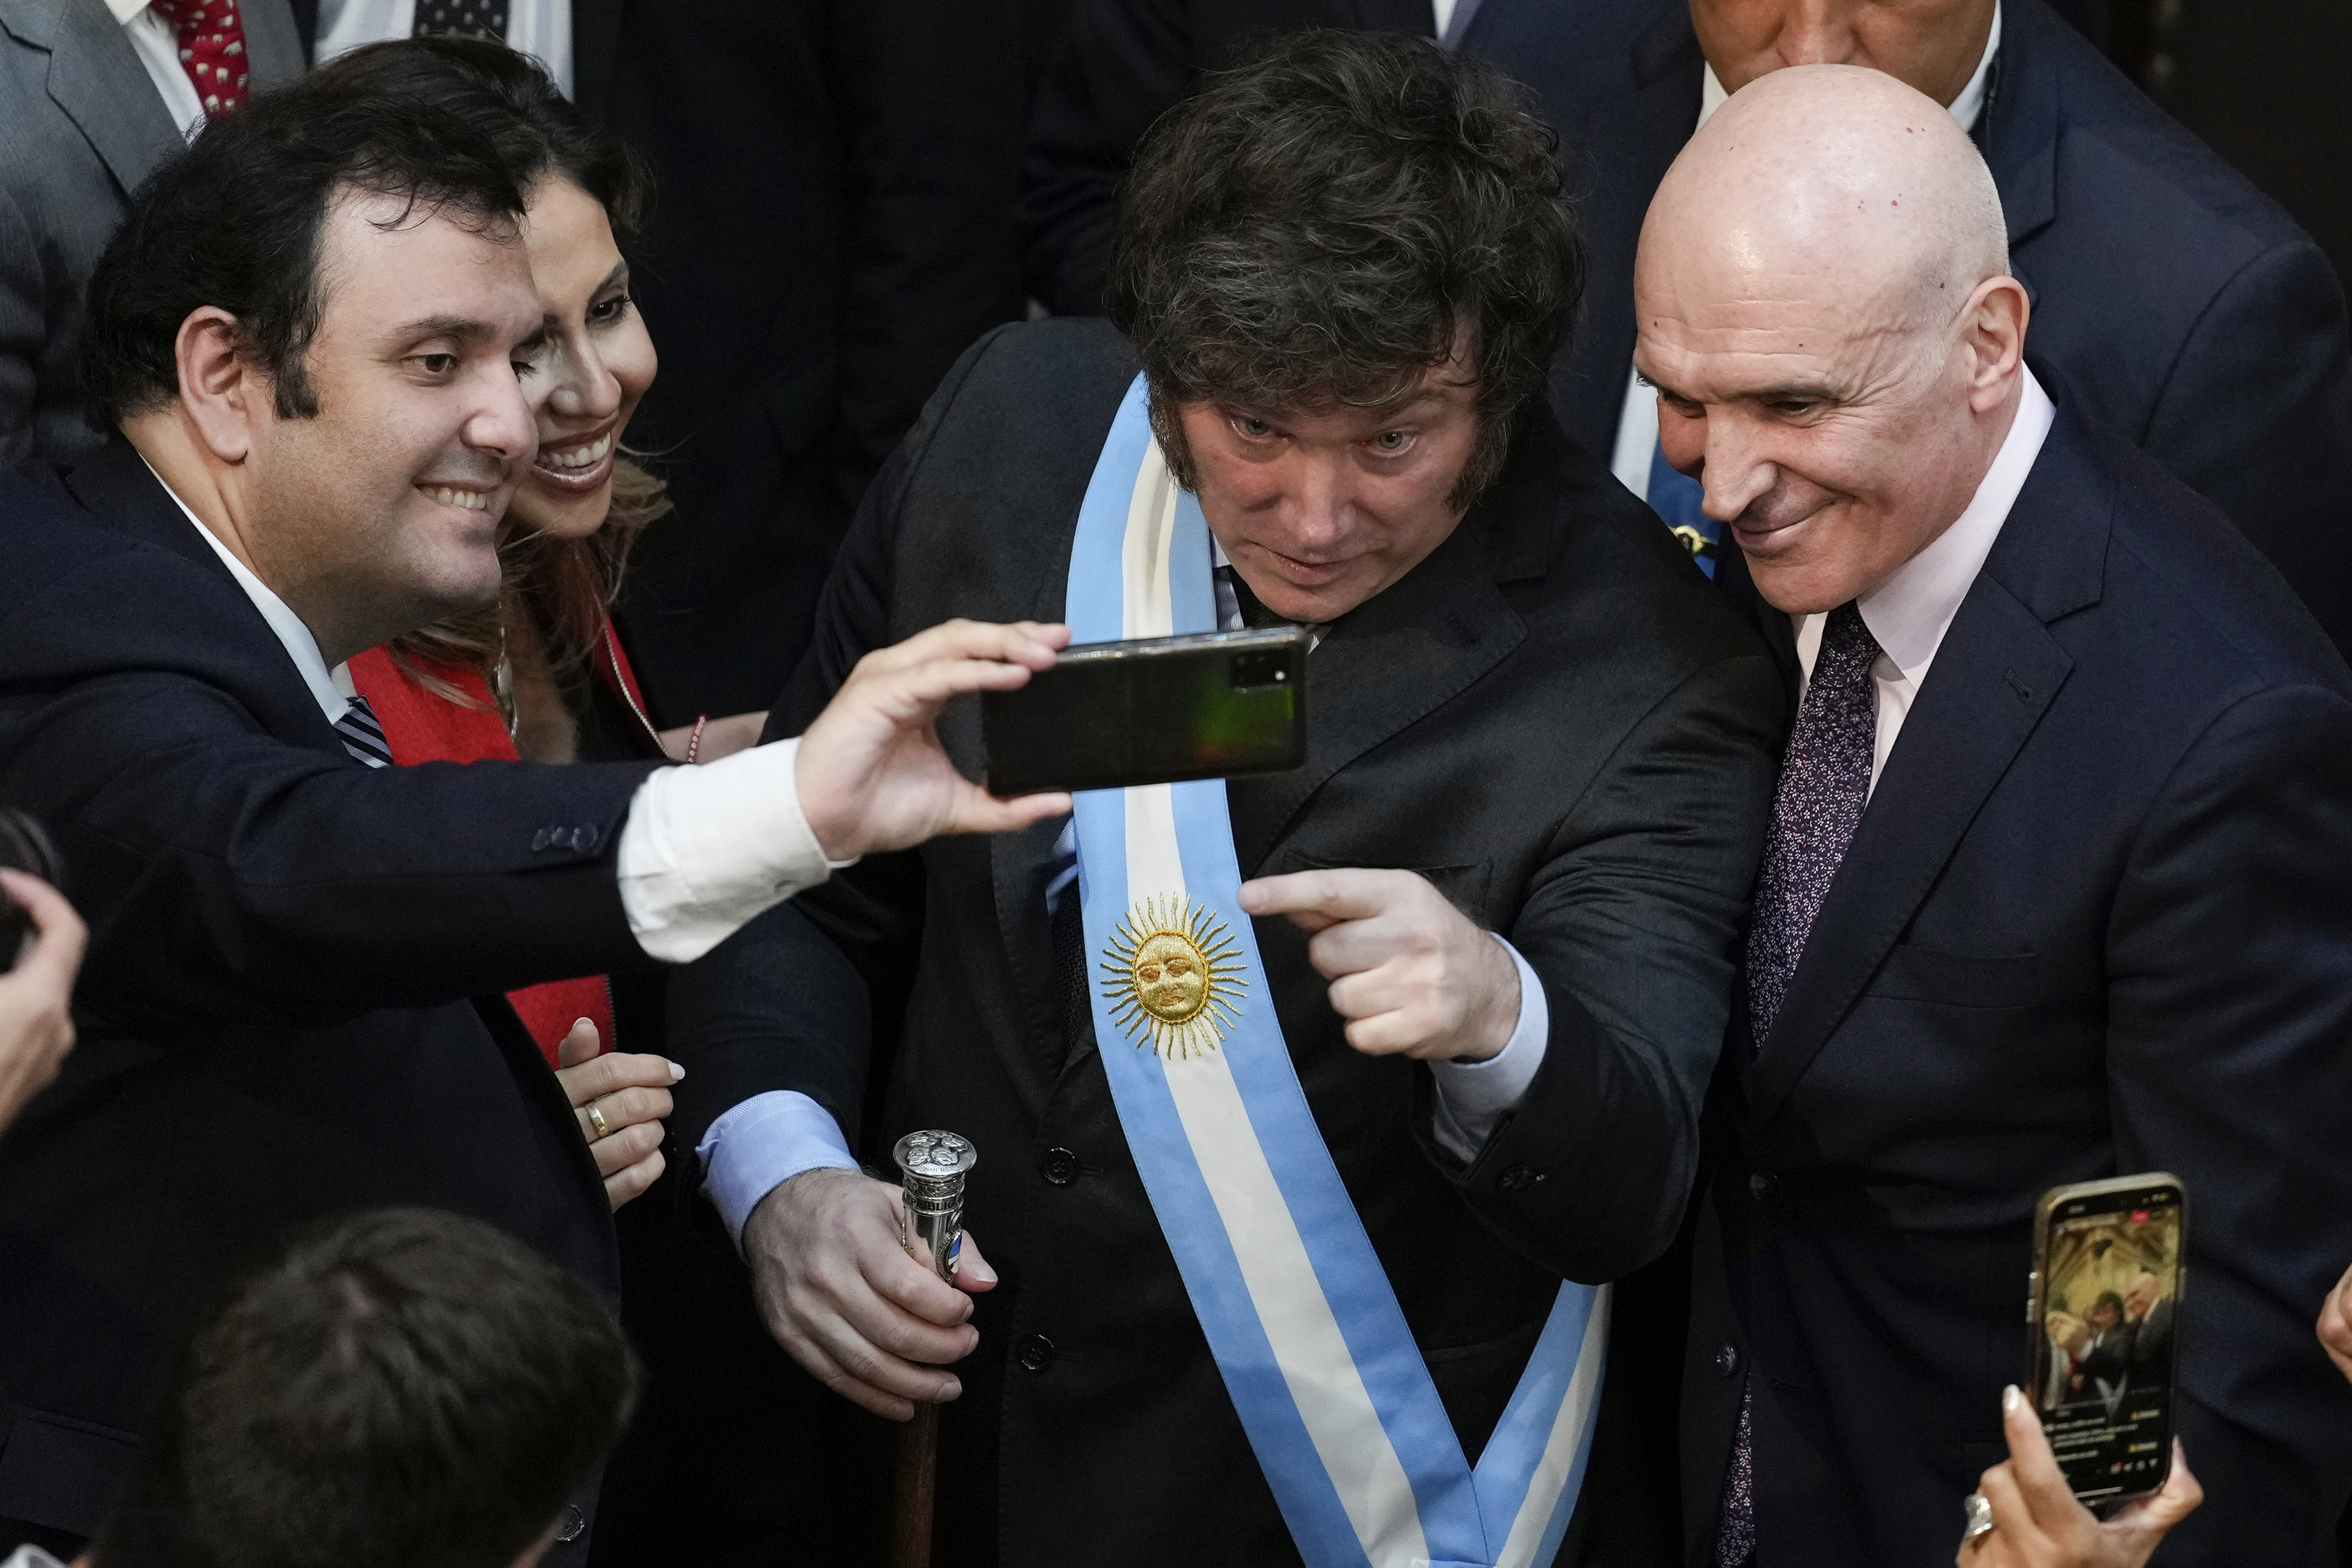 Milei asoma a Argentina a un desafío inédito en décadas: un acuerdo entre diferentes